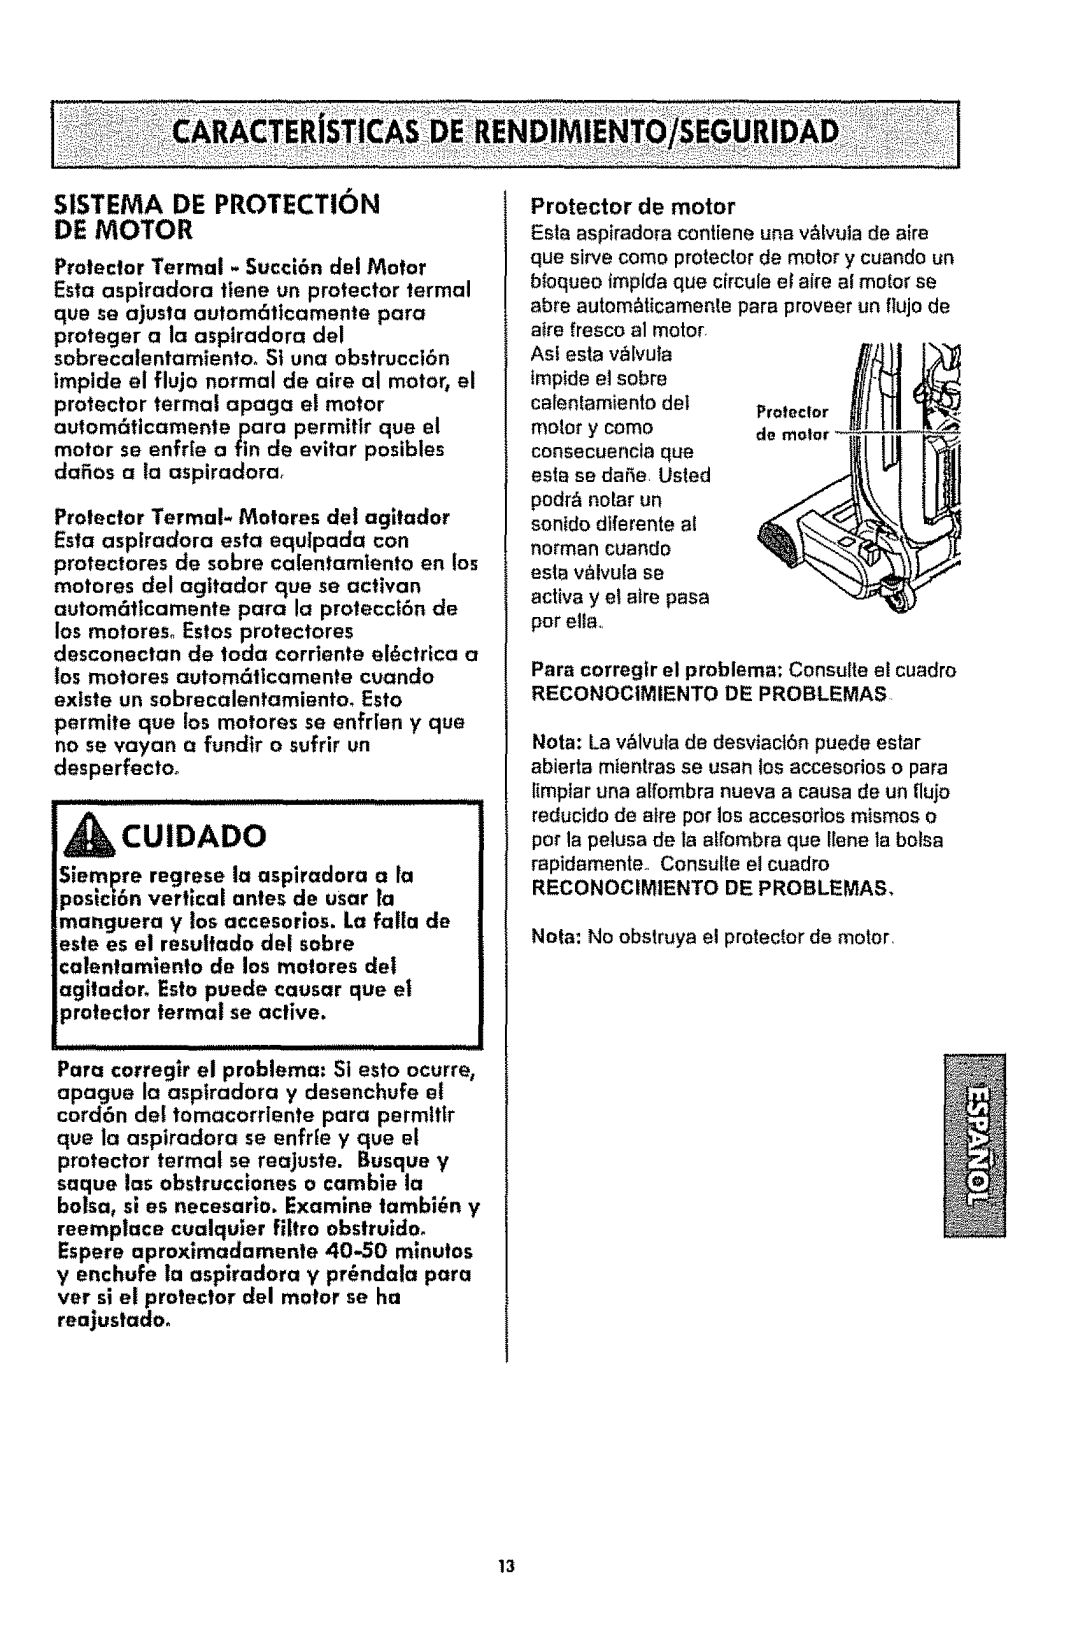 Kenmore 116.3181 manual Sistema De Protection De Motor, _Cuidado, Protector de motor 